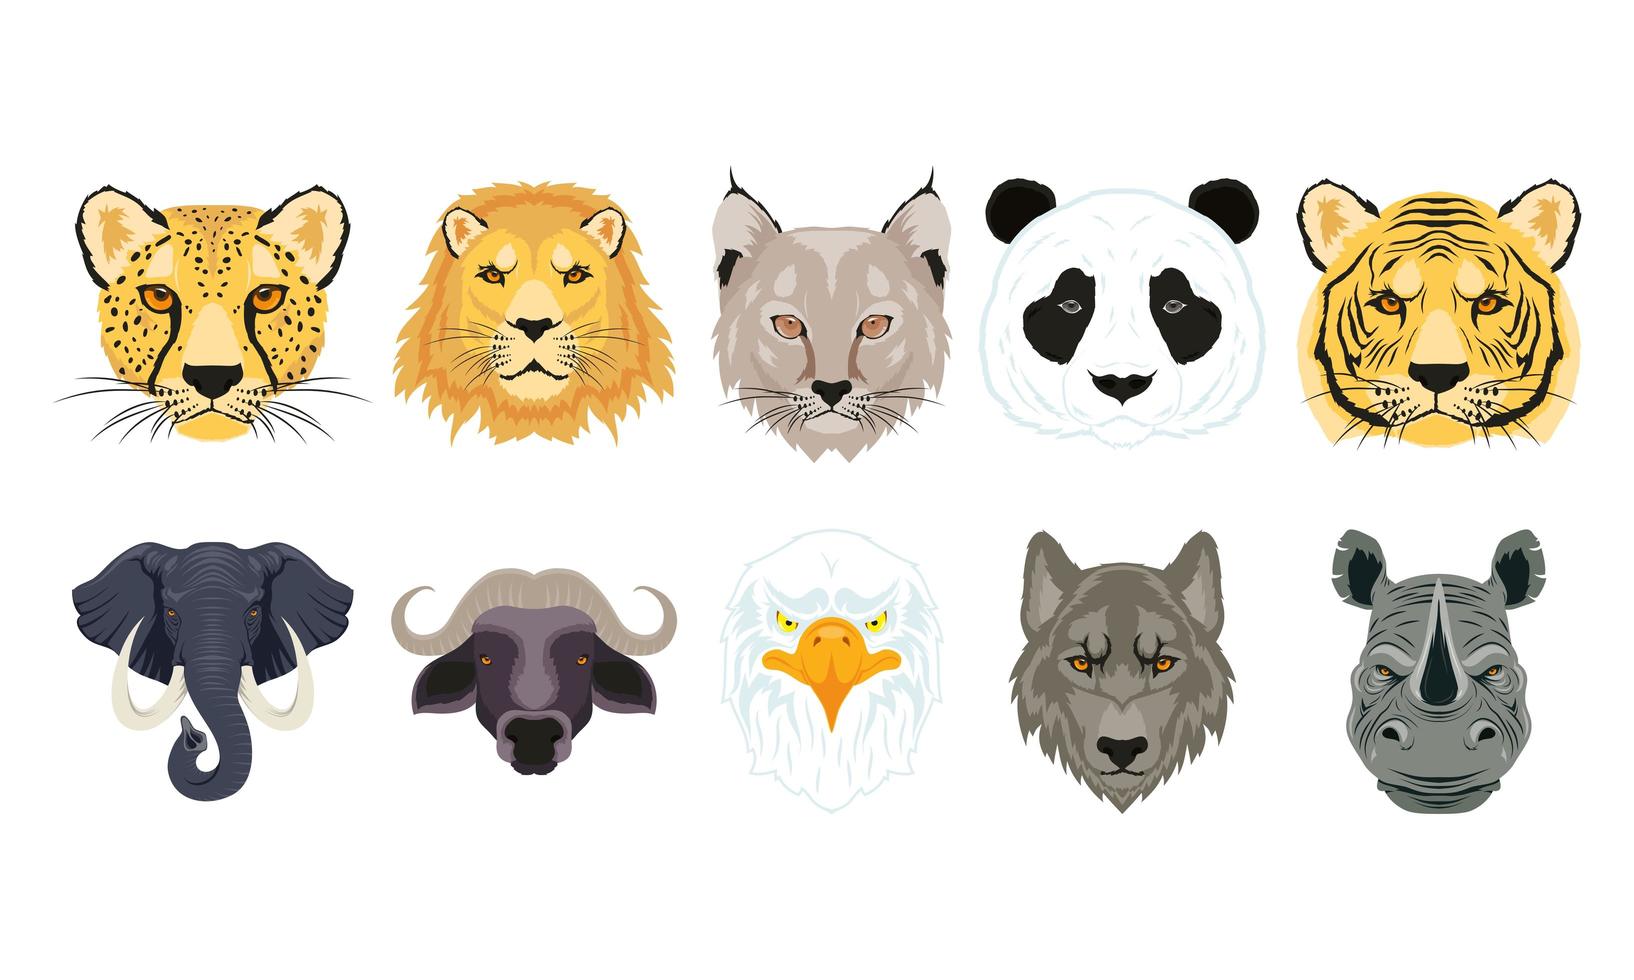 Wild animals characters head set vector